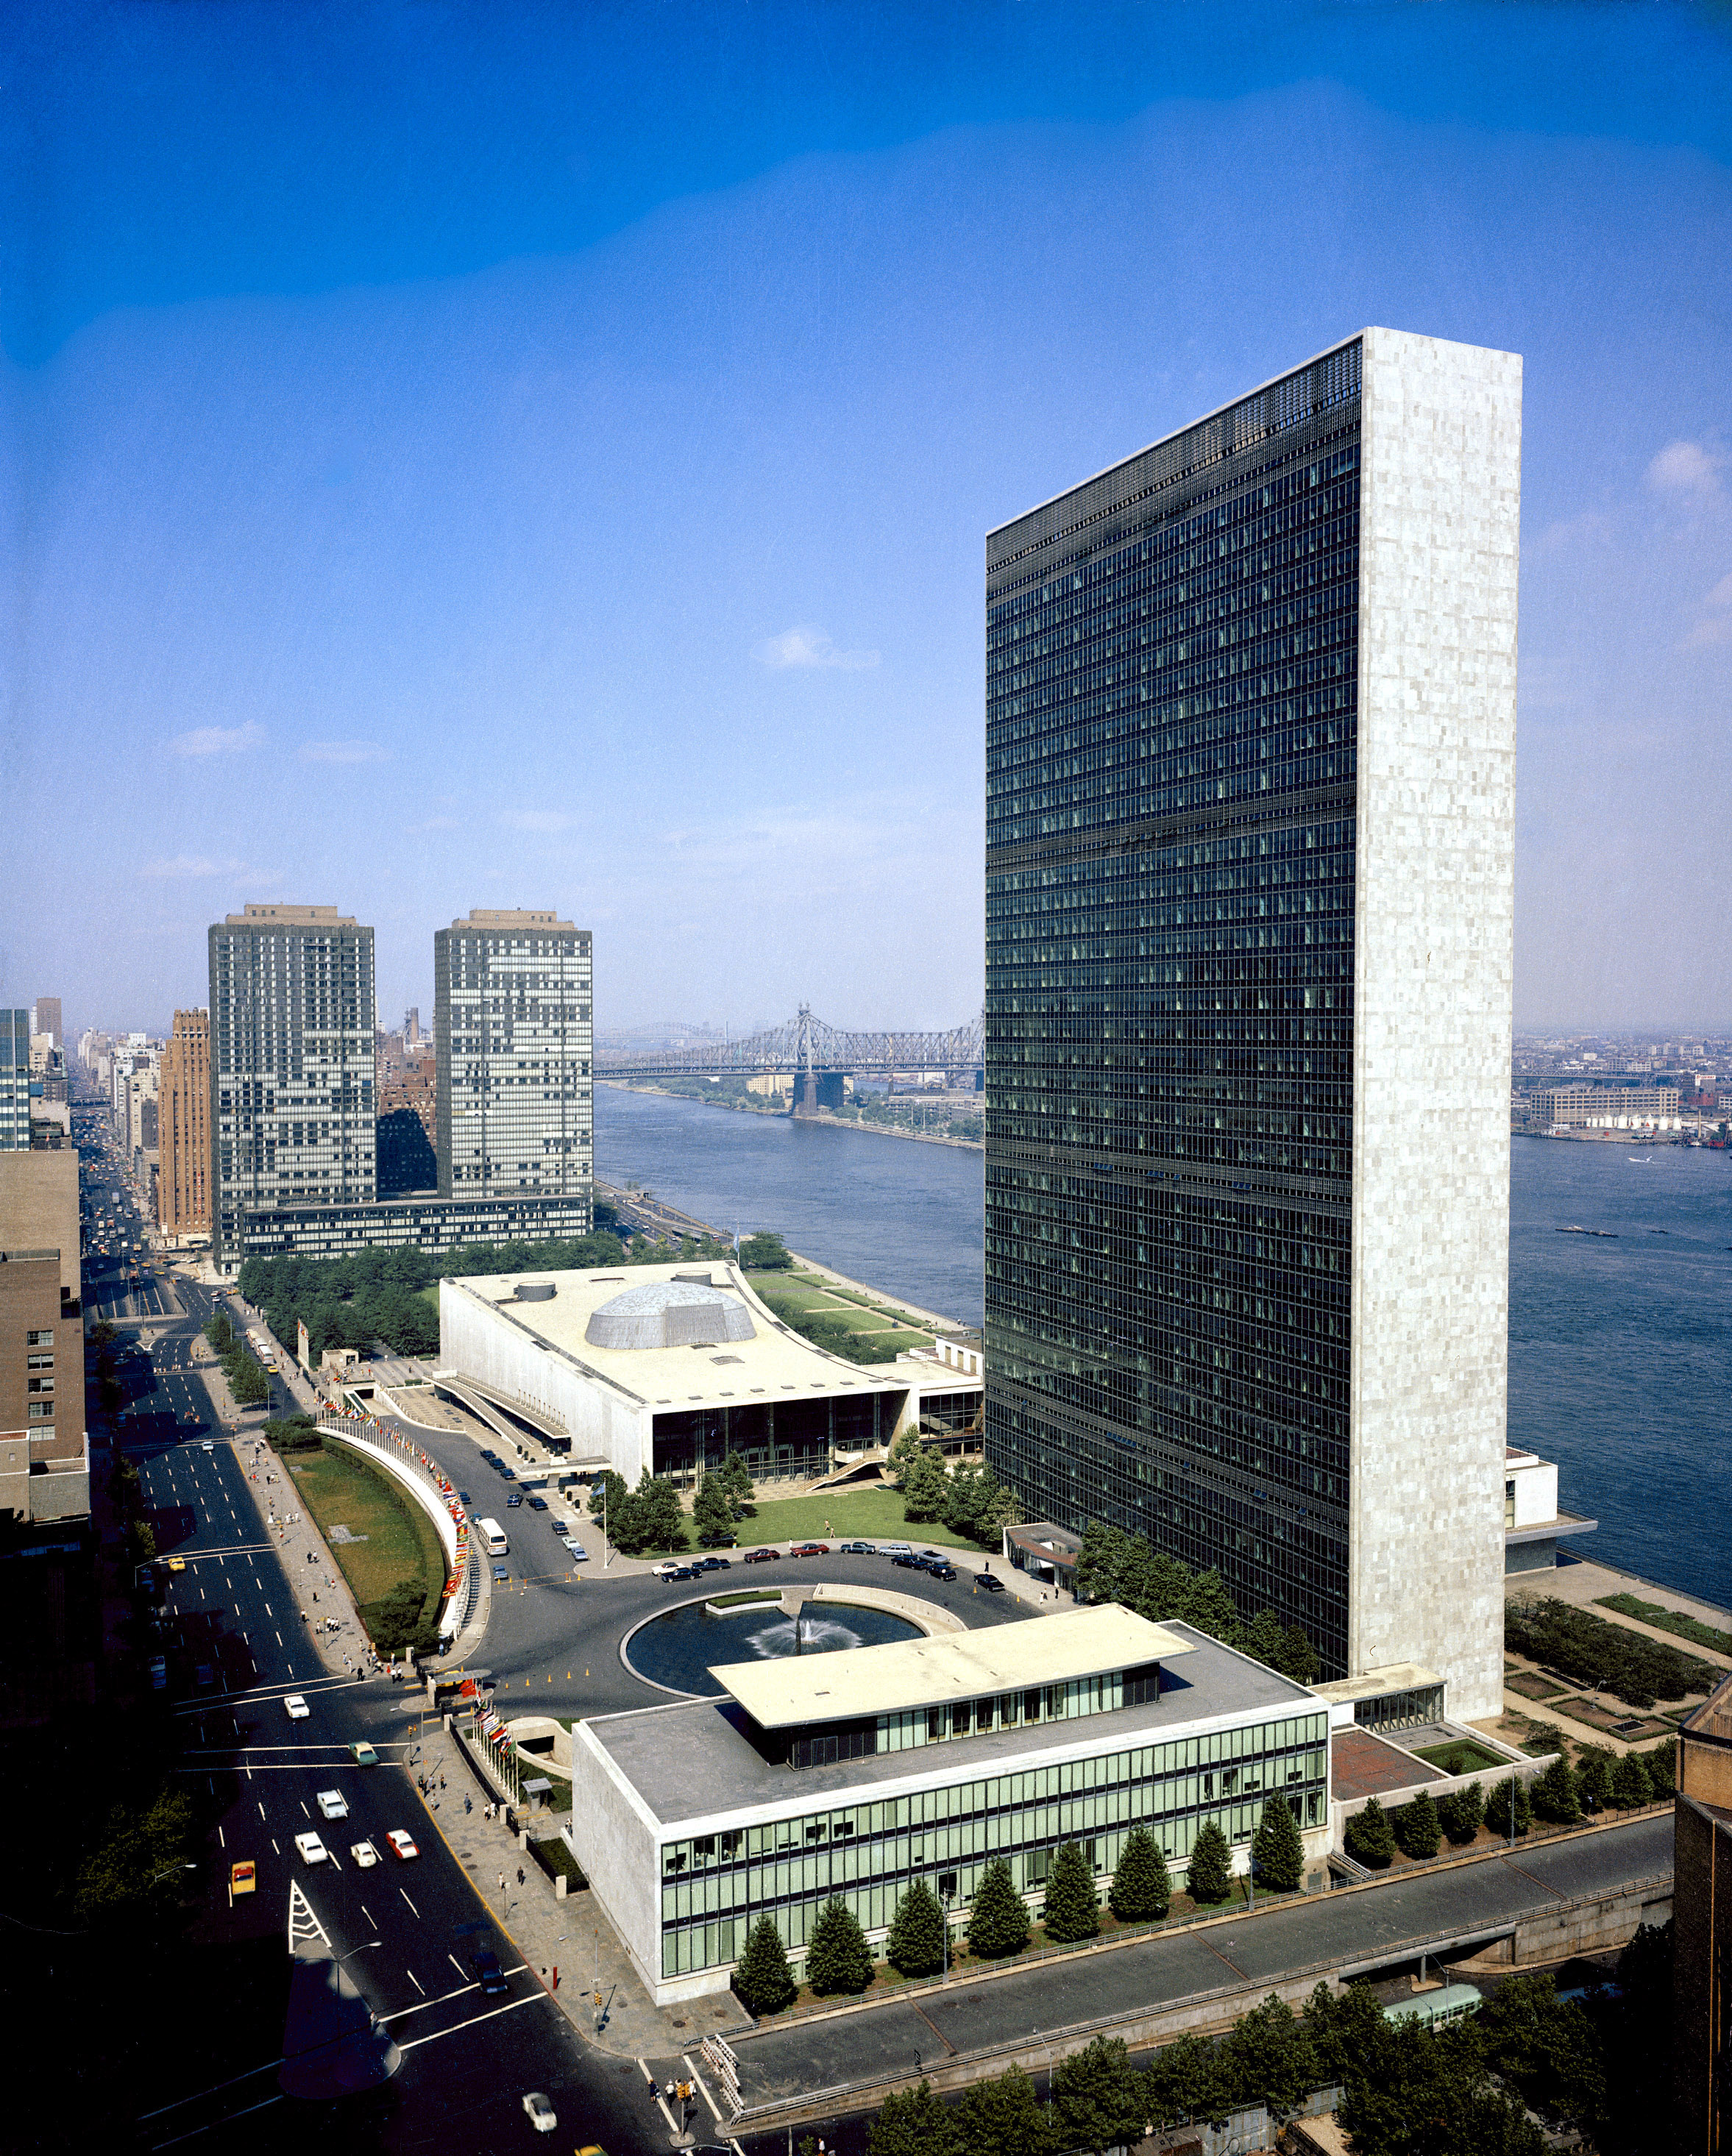 Город штаб квартиры оон. Штаб-квартира ООН В Нью-Йорке. Здание штаб-квартиры ООН В Нью-Йорке. Комплекс зданий ООН В Нью-Йорке. Здание ООН В Нью-Йорке внутри.